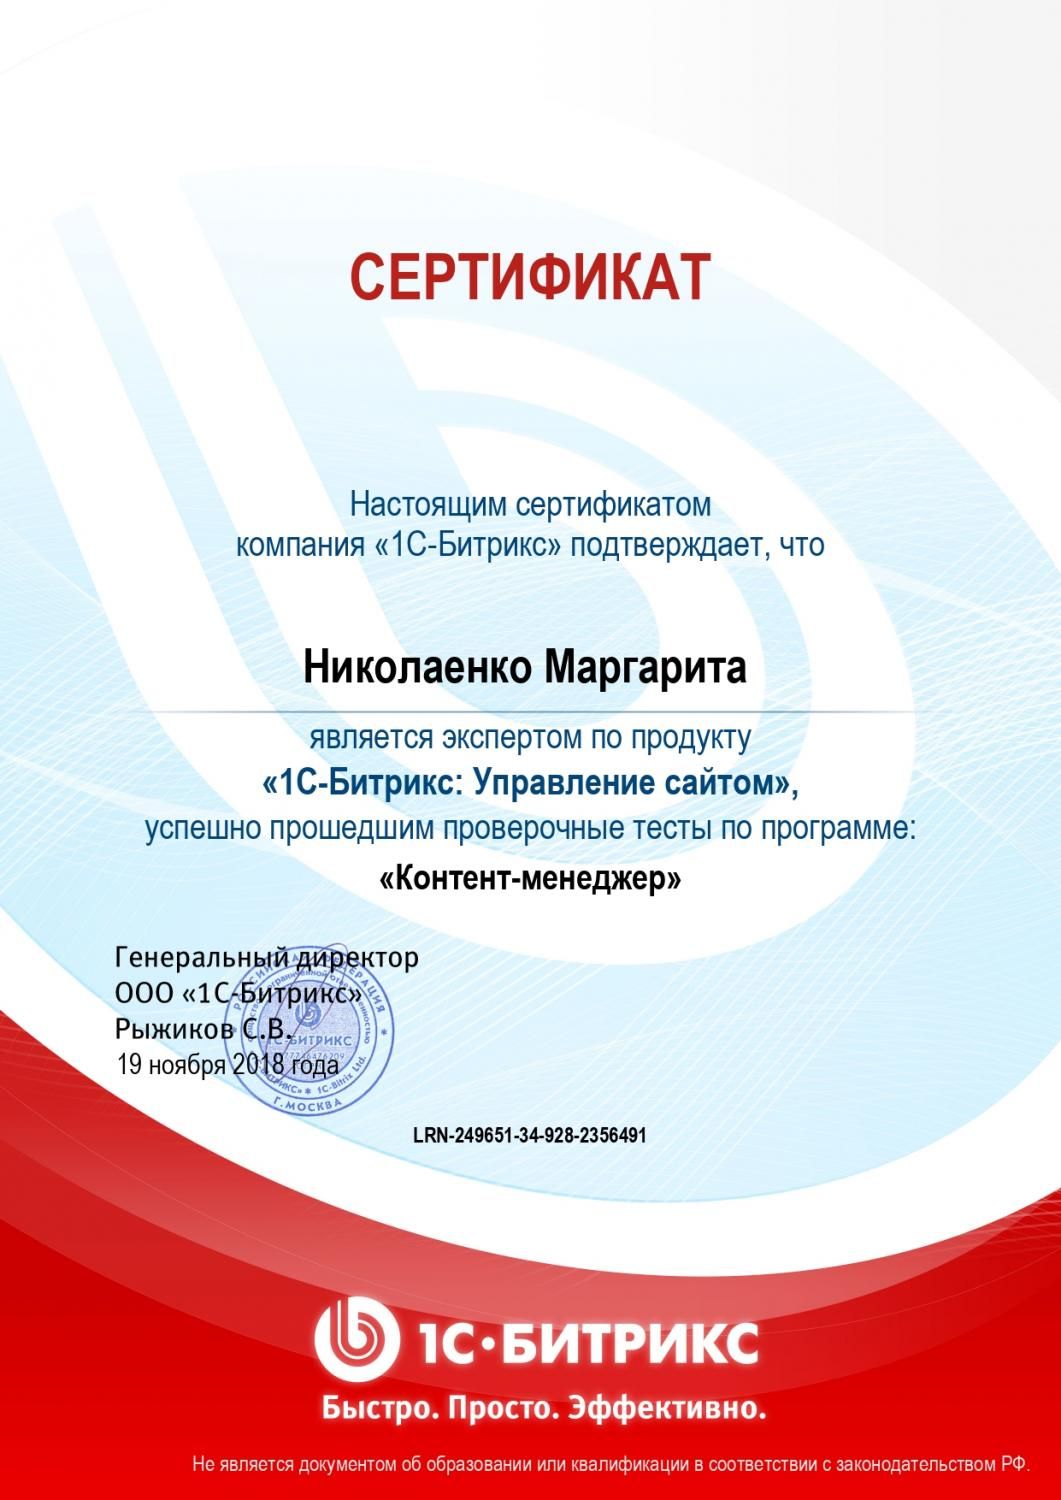 Сертификат эксперта по программе "Контент-менеджер" - Николаенко М. в Магадана